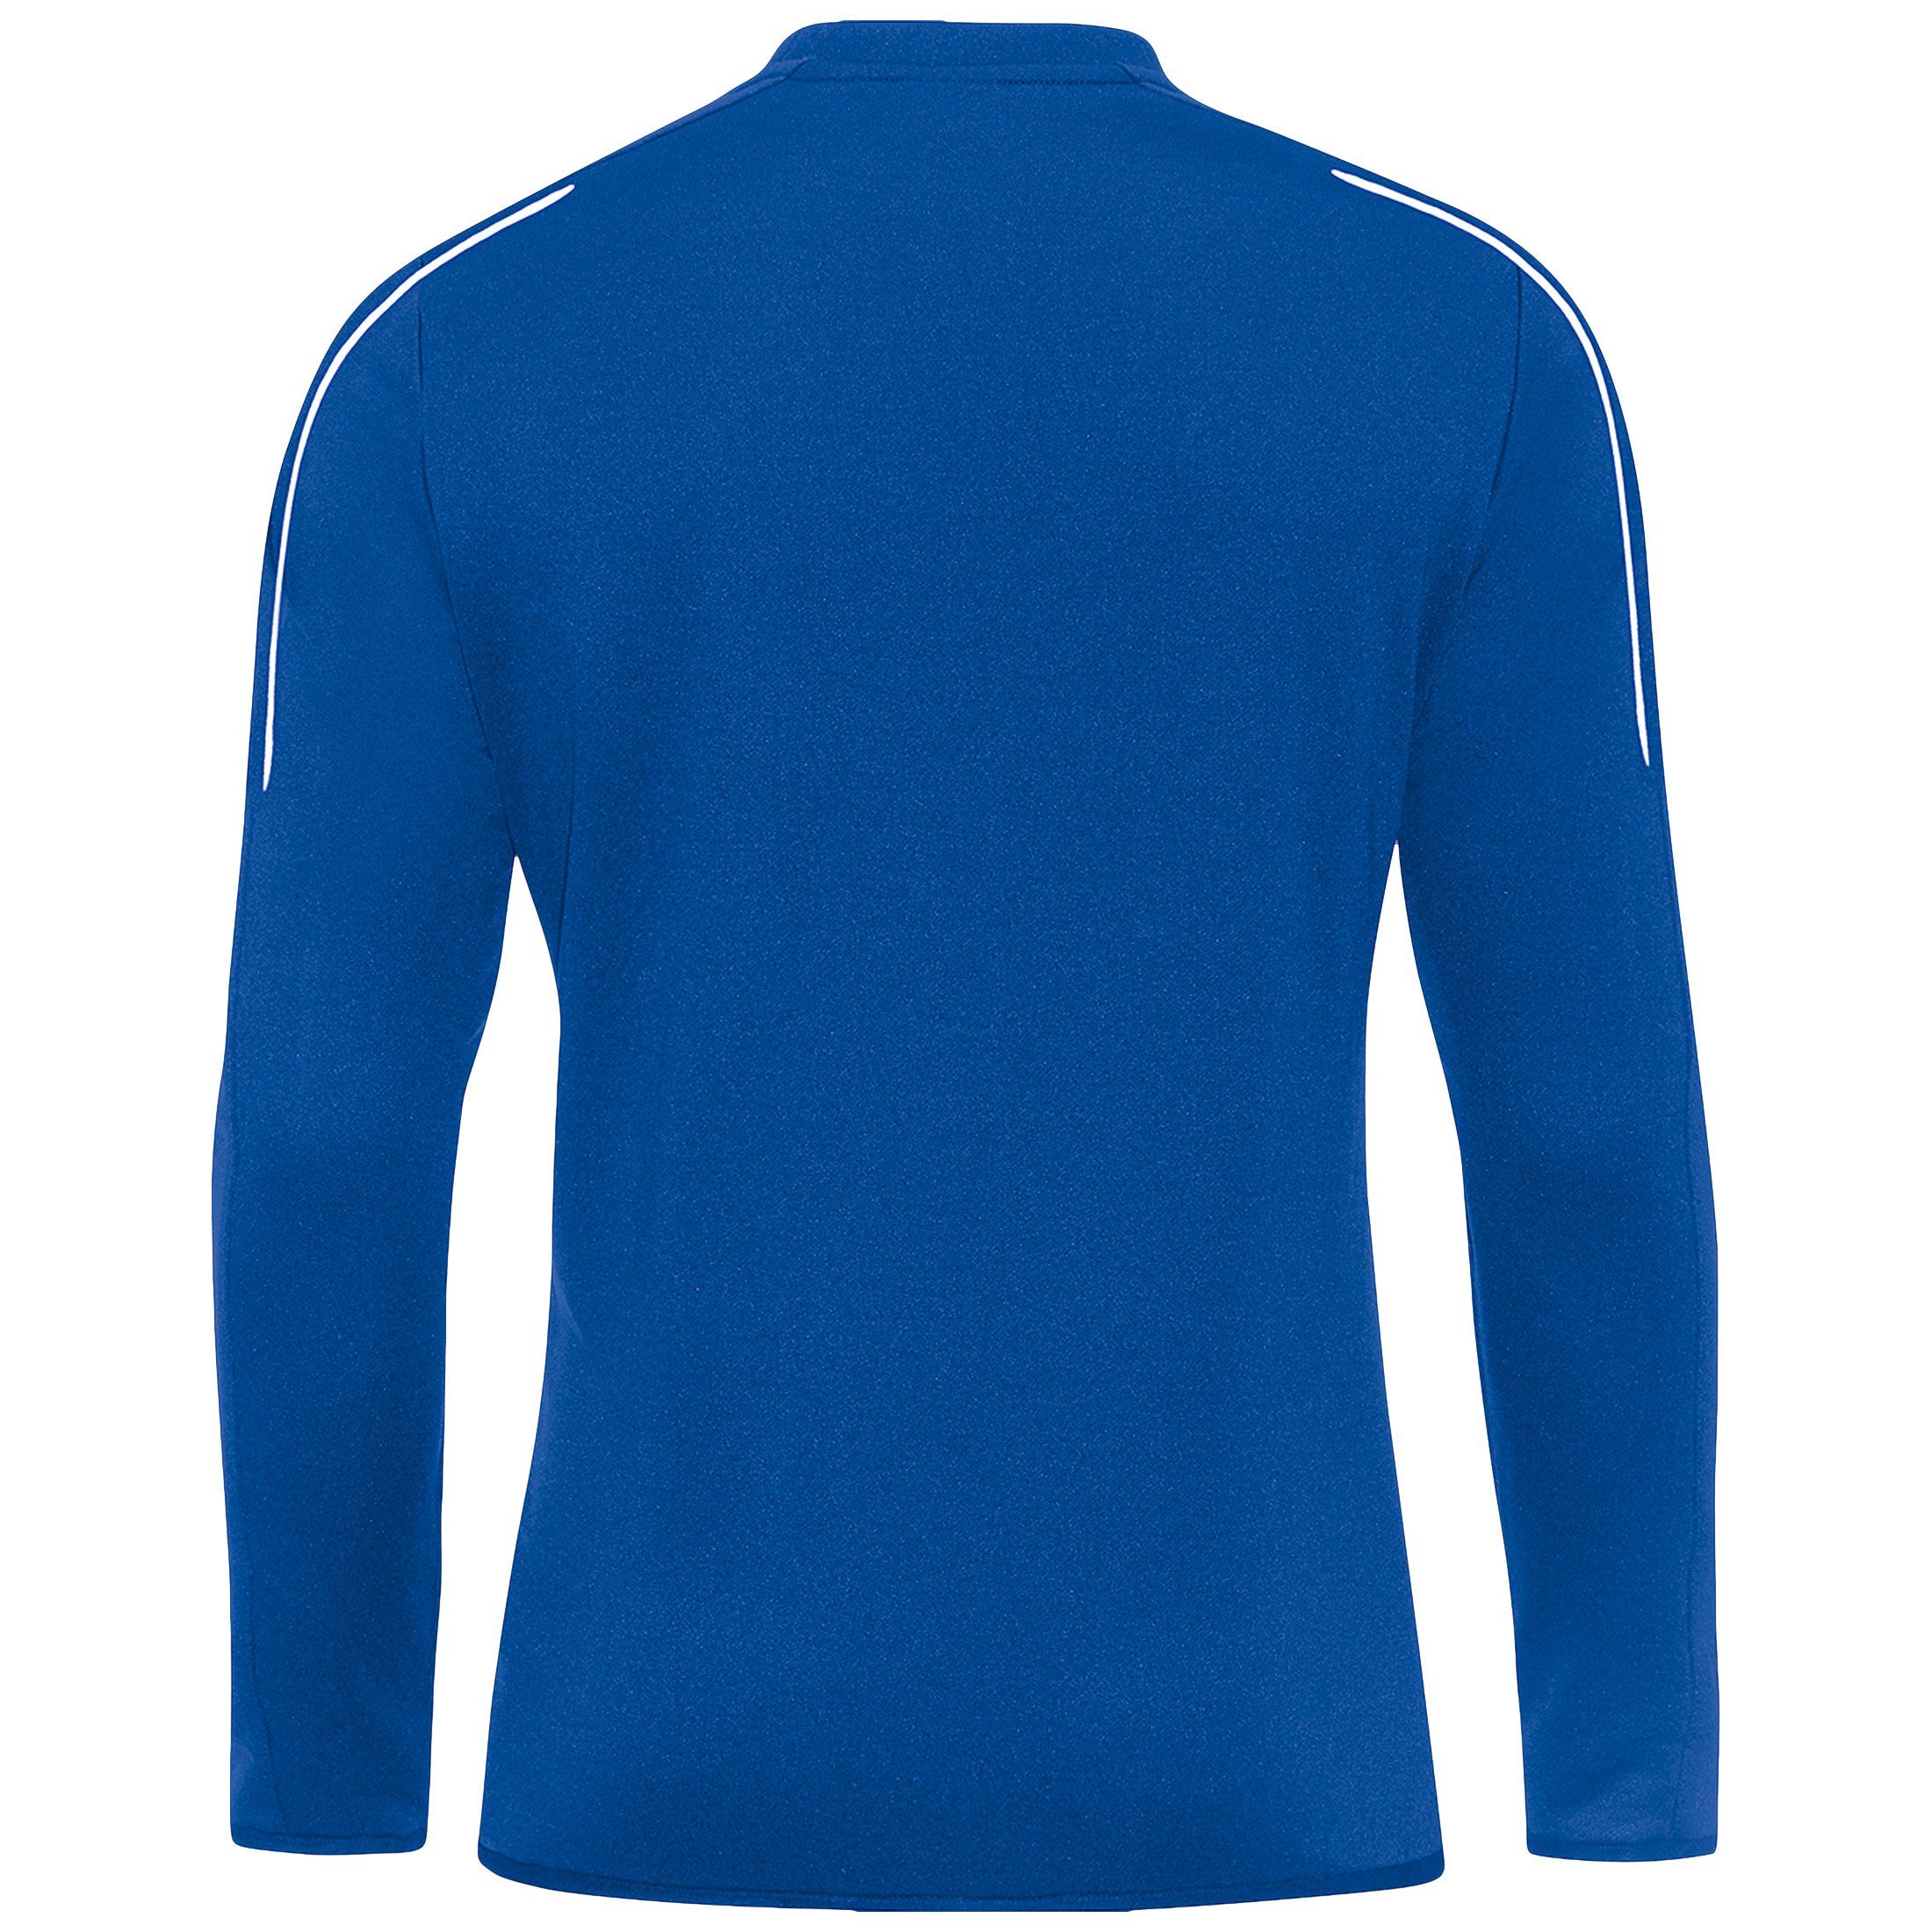 Herren Trainingssweat blau Jako Classico Sweatshirt